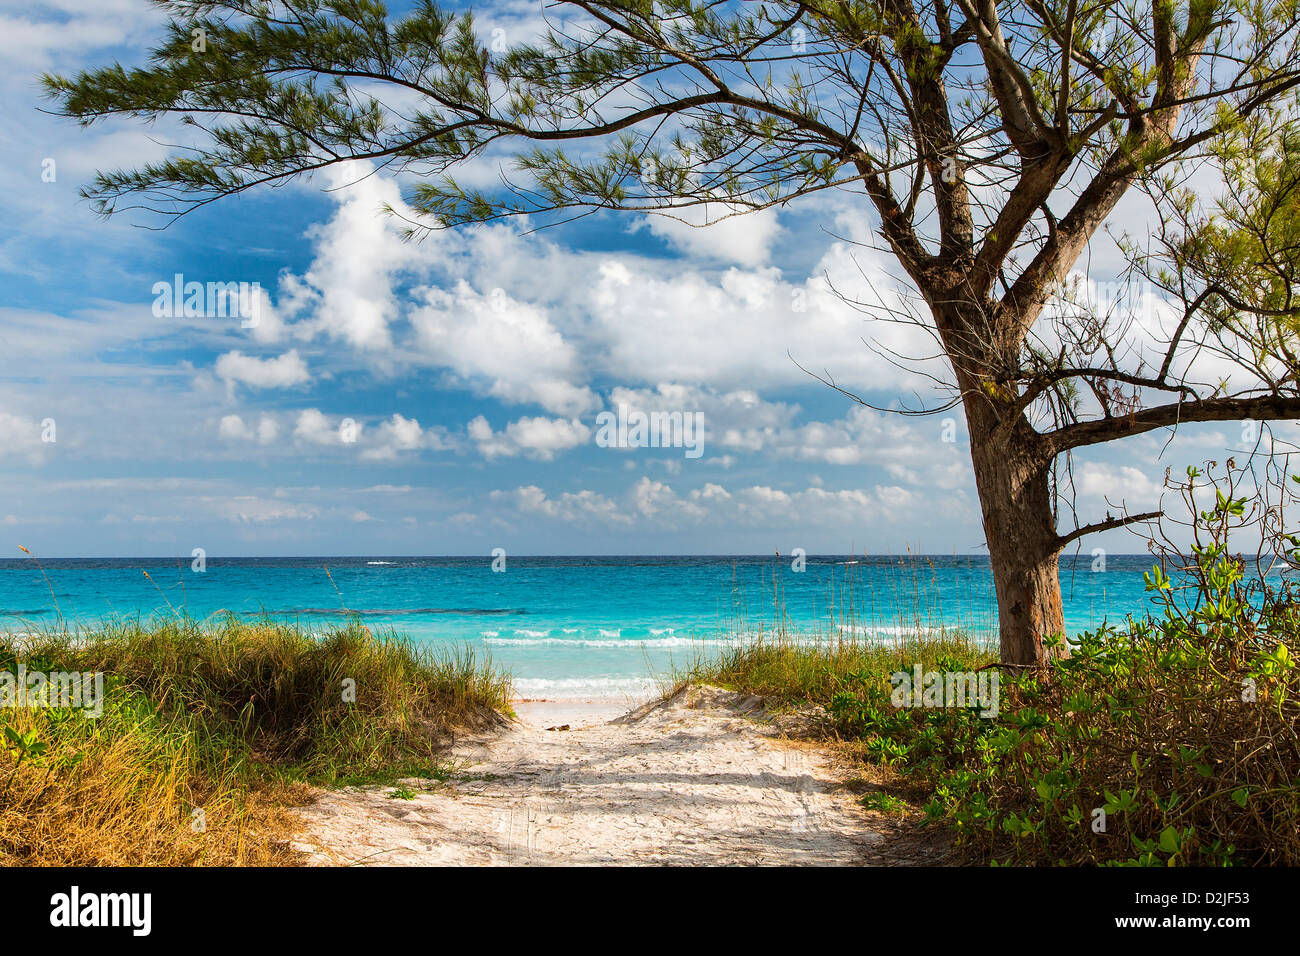 Bahamas, Eleuthera Island, Club Med Beach Foto Stock